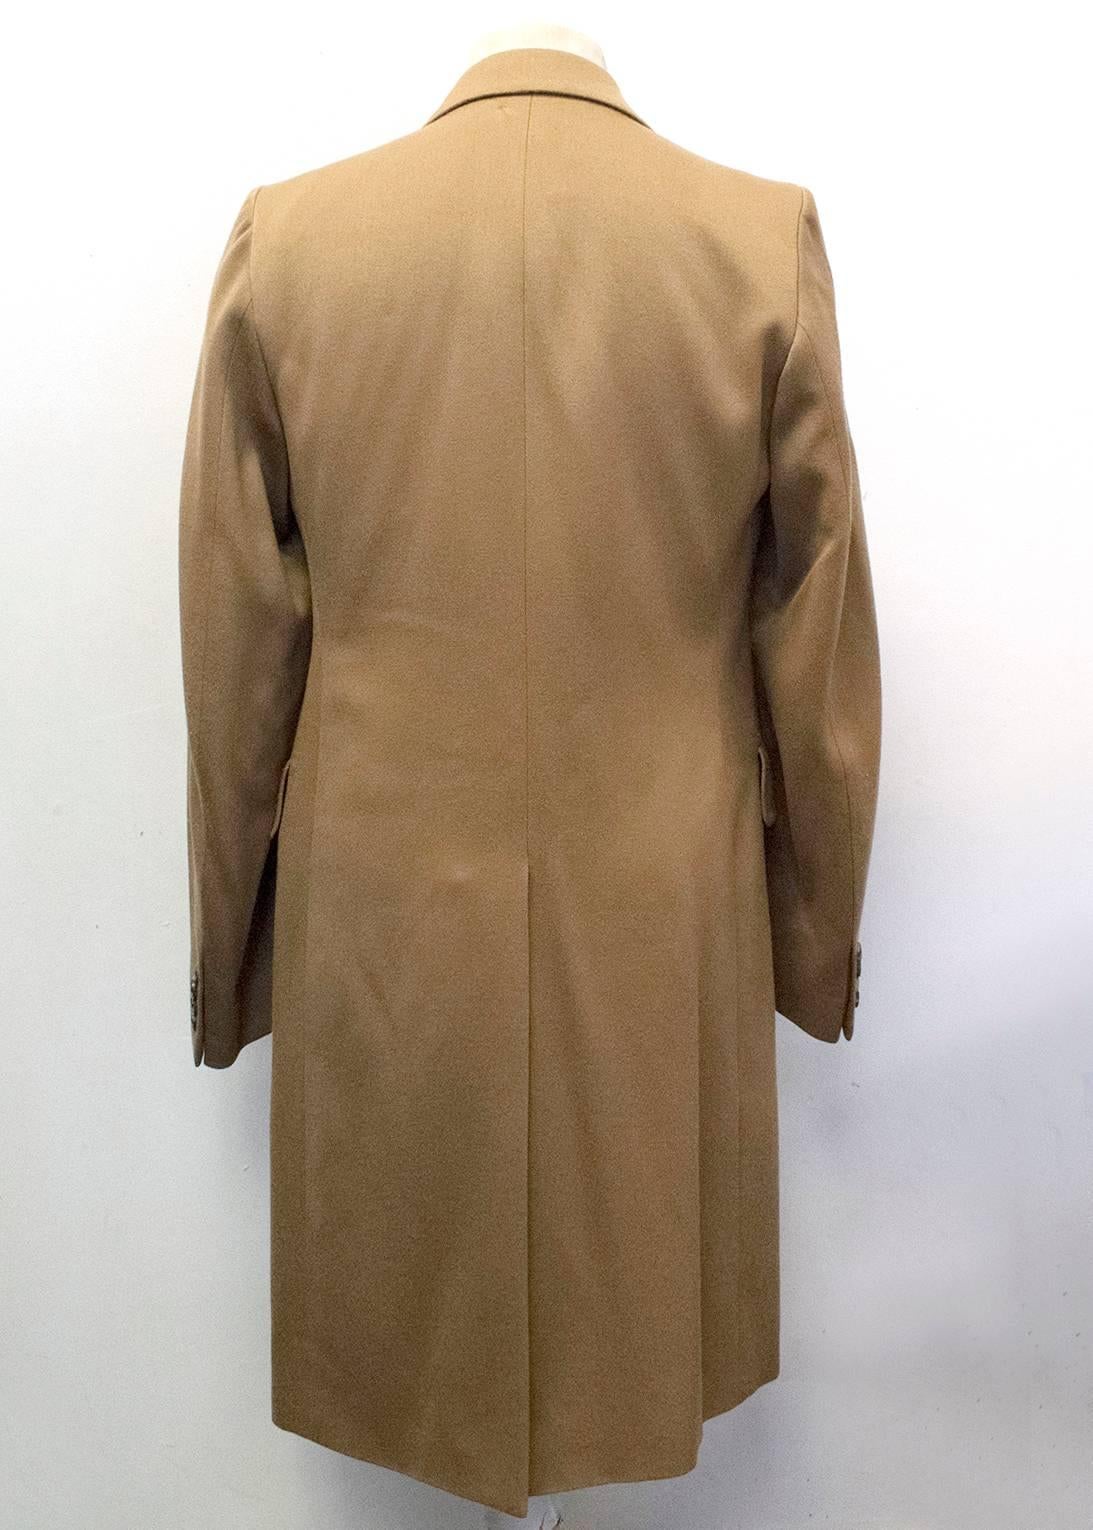 dries van noten camel coat